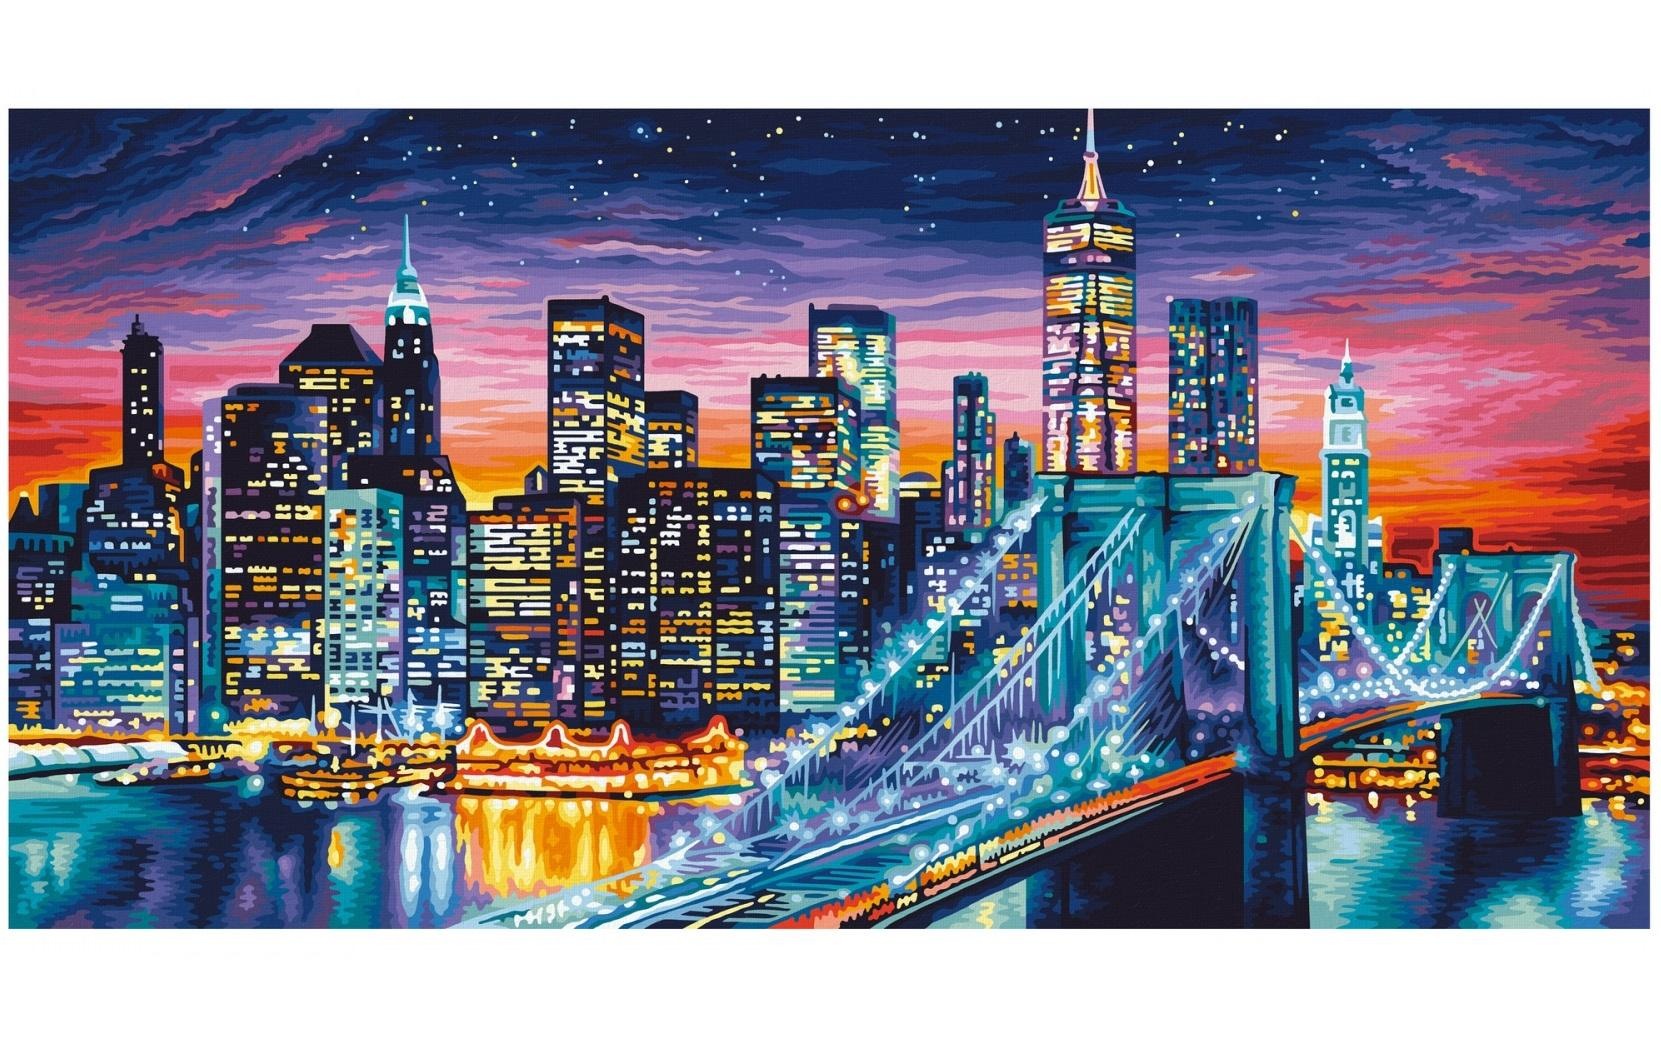 Schipper Malen nach Zahlen »Manhattan bei Nacht«